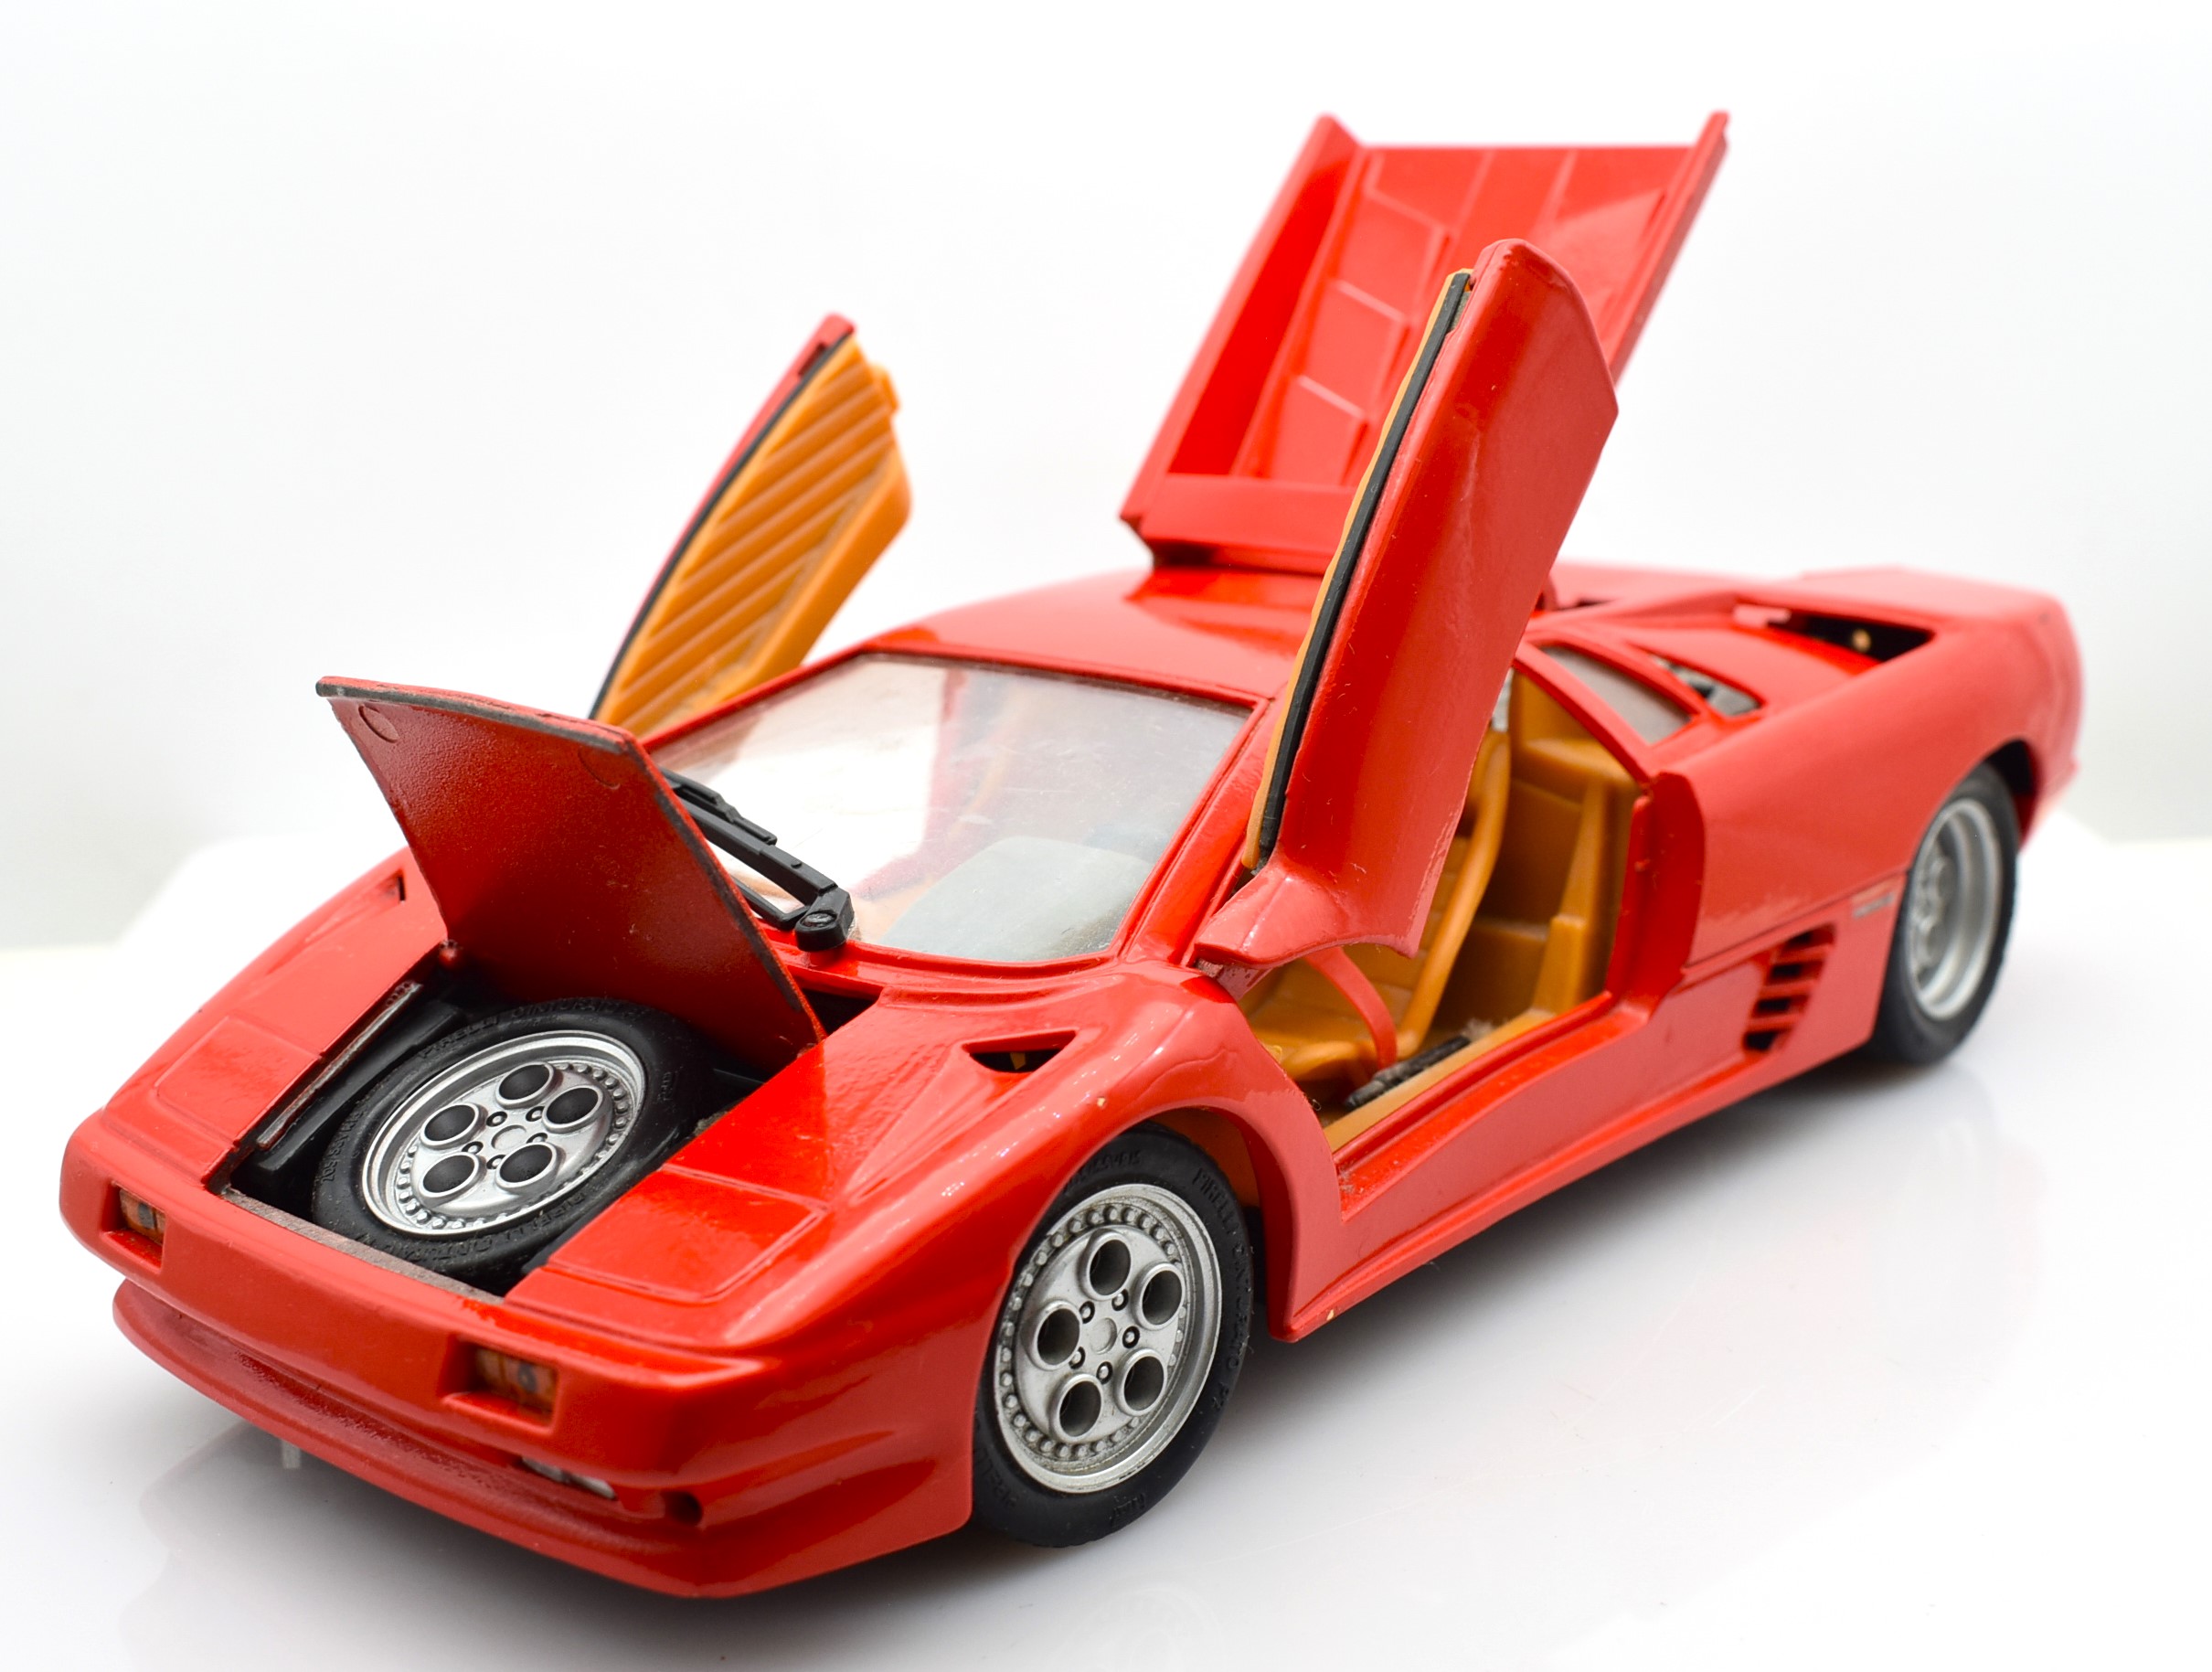 Modellino auto scala 1:18 Lamborghini Diablo diecast modellismo statico -  Arcadia Modellismo